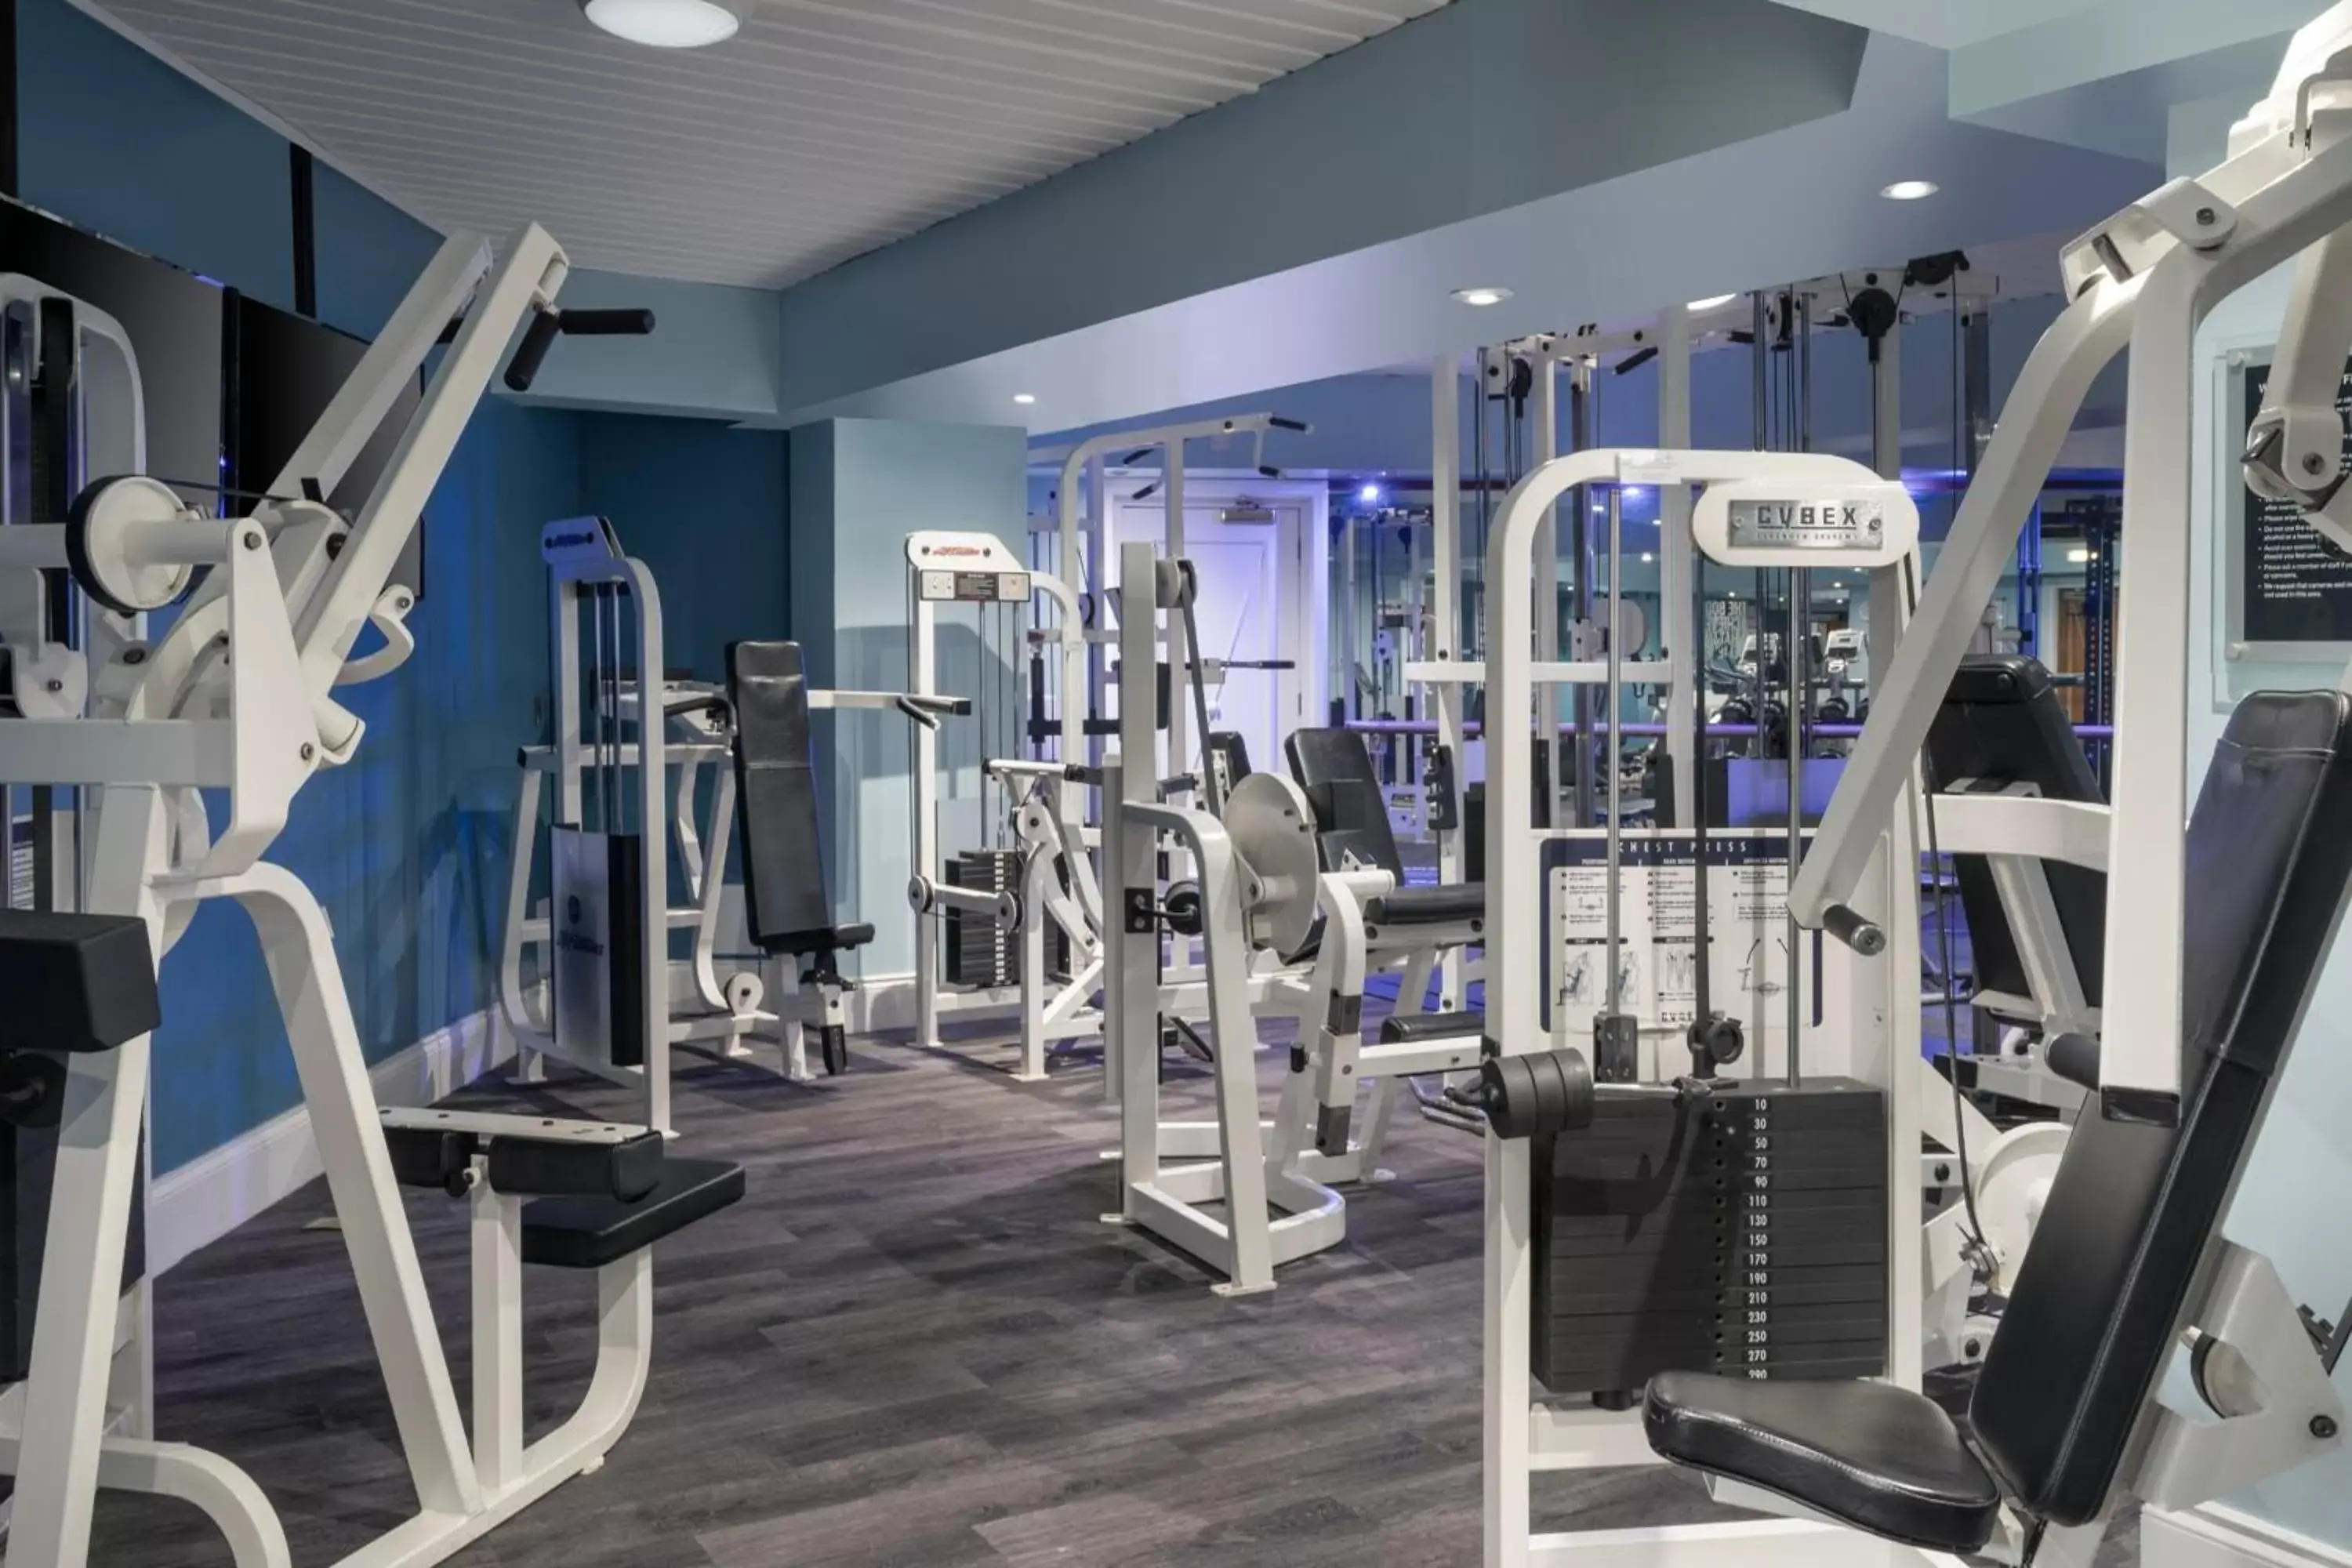 Fitness centre/facilities, Fitness Center/Facilities in Delta Hotels by Marriott Edinburgh